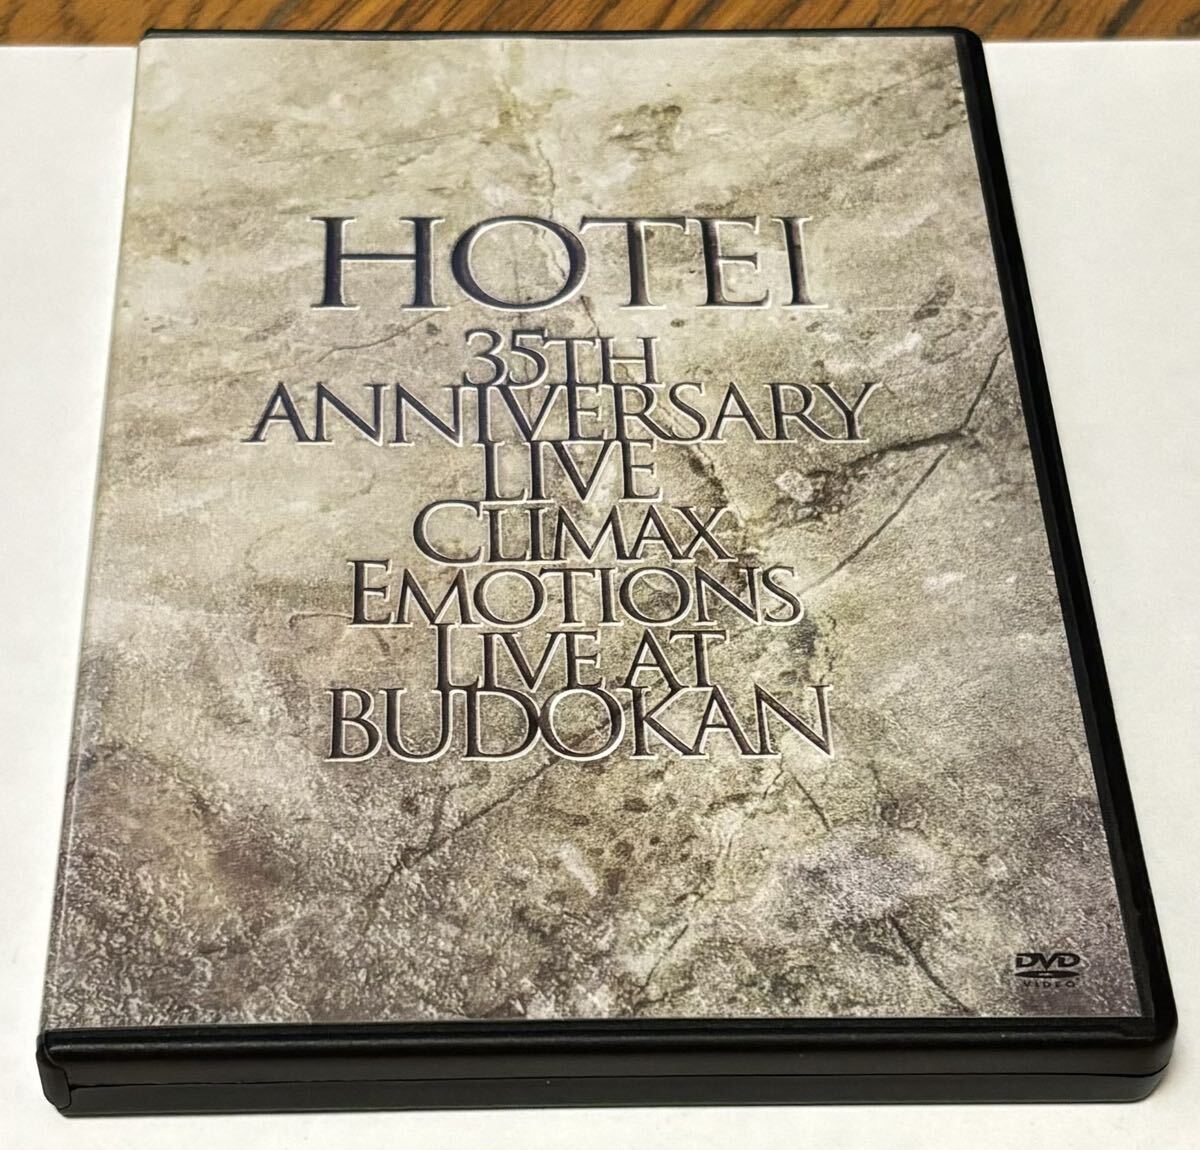 音楽 邦楽 ロック 布袋寅泰 DVD HOTEI 35TH ANNIVAERSARY LIVE CLIMAX EMOTIONS LIVE AT BUDOKAN 中古。DVD版 2DVDの画像1